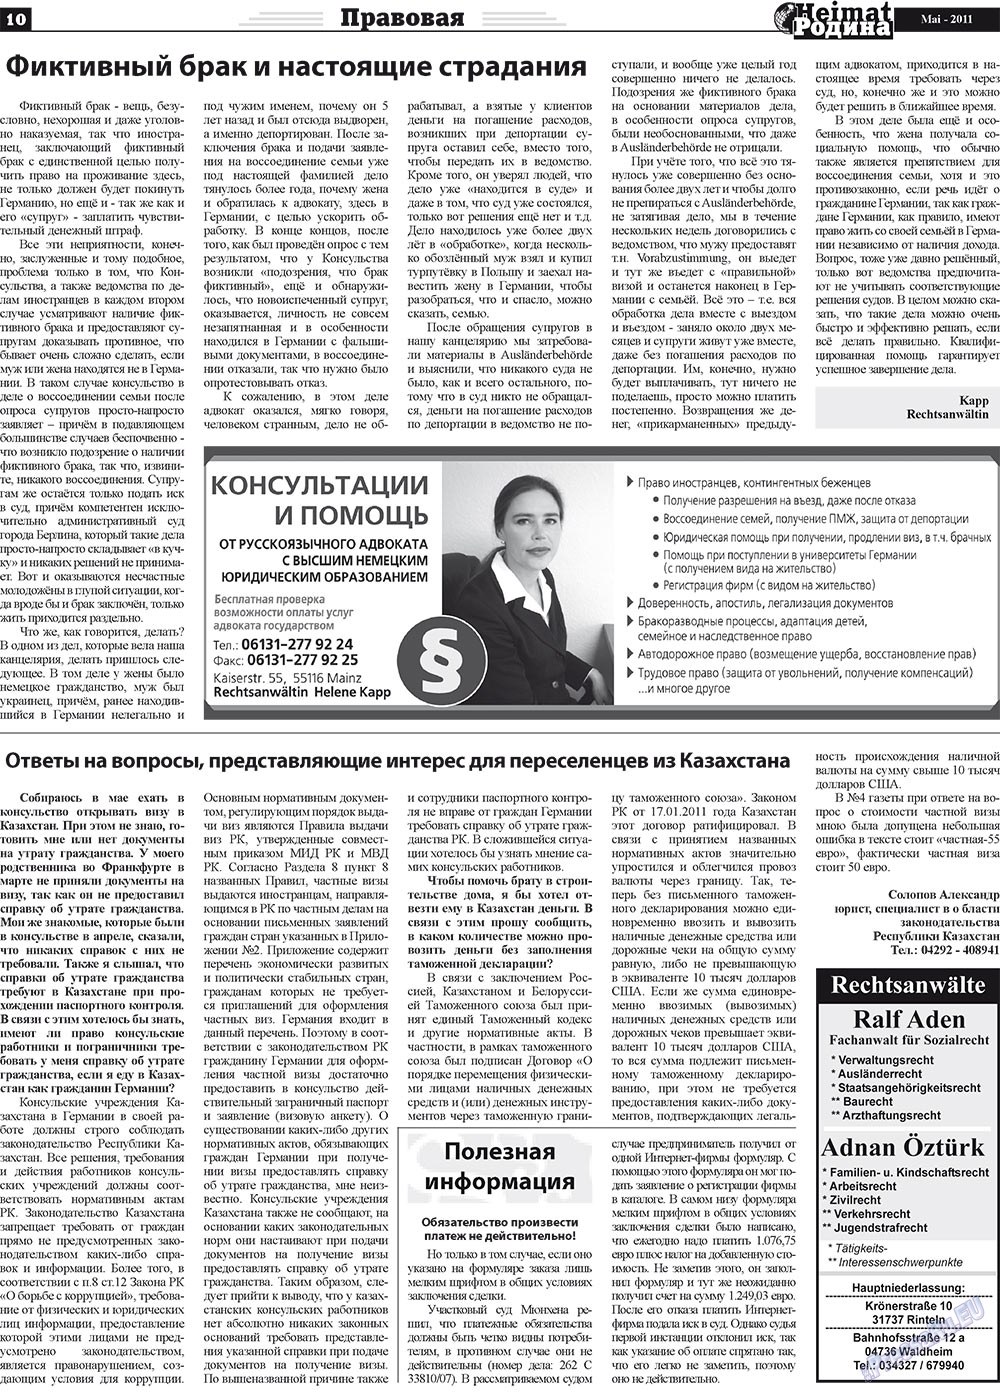 Heimat-Родина (газета). 2011 год, номер 5, стр. 10